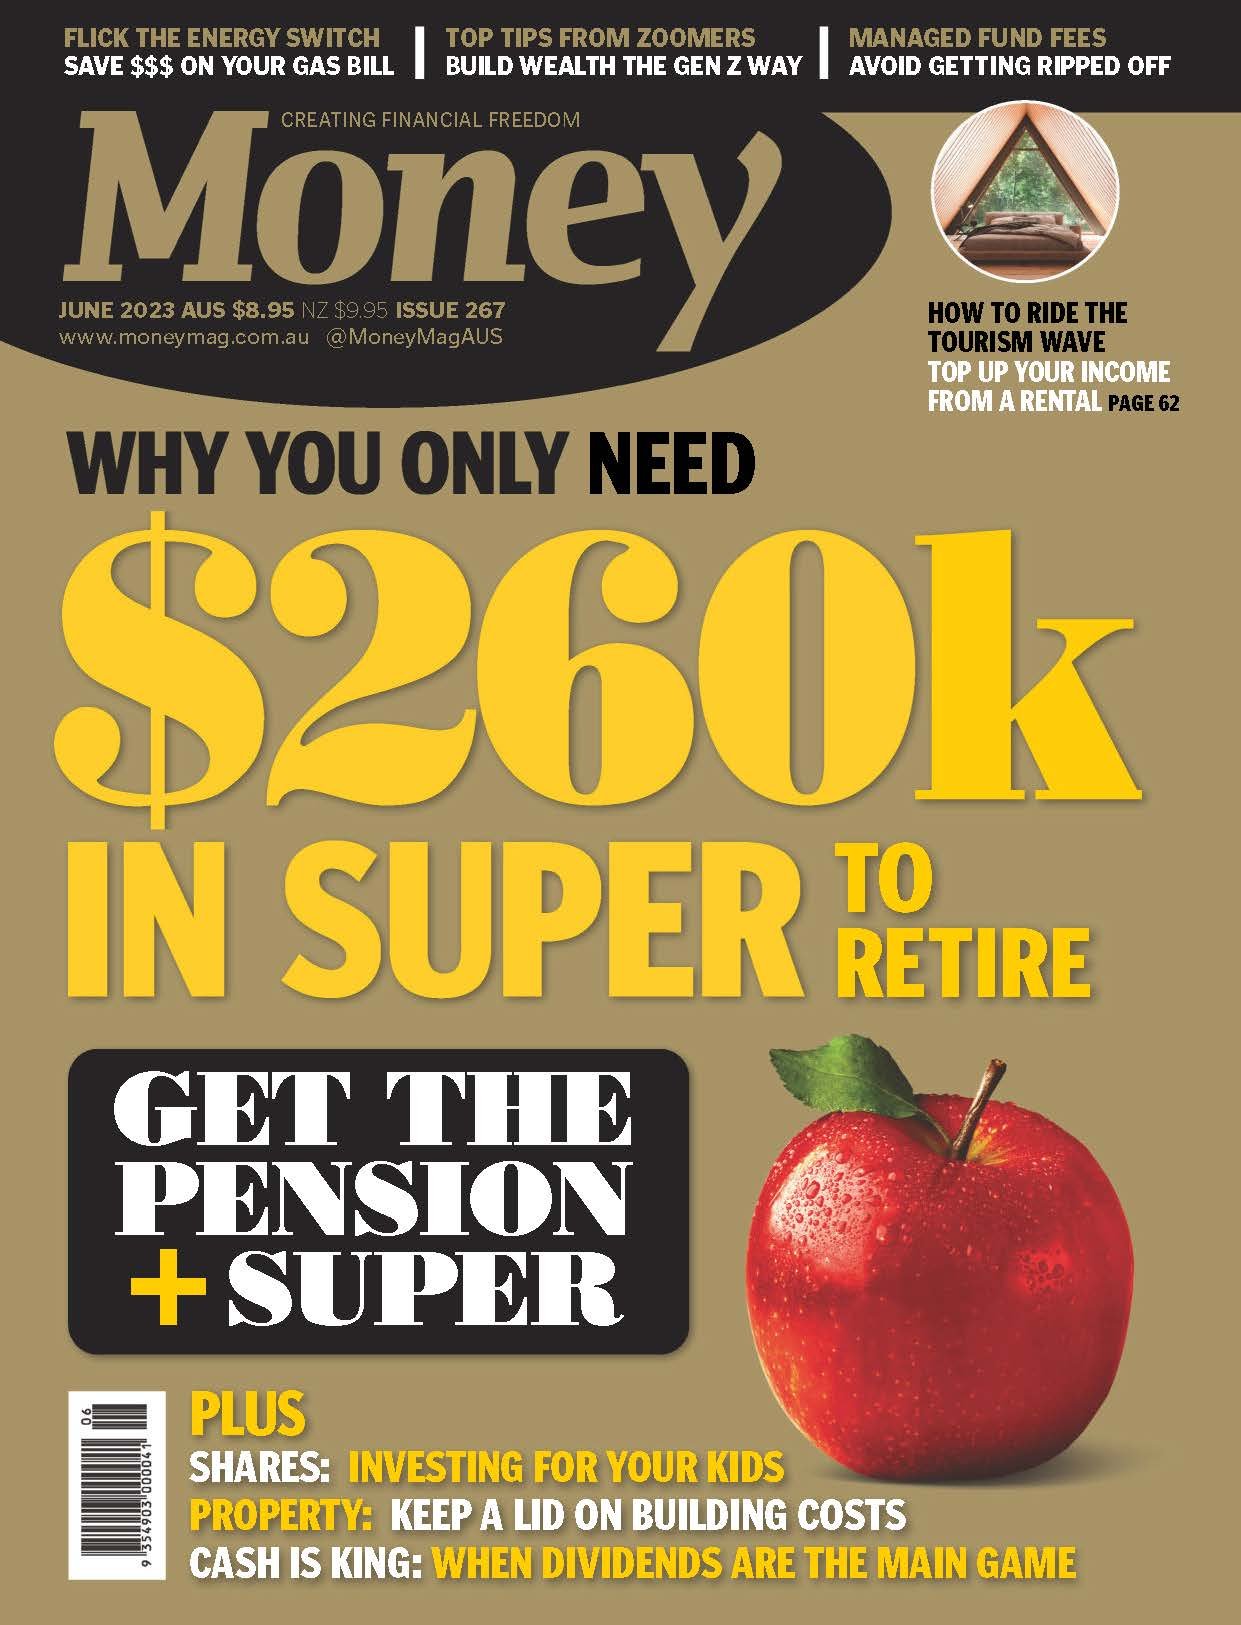 Banyantree-Money Magazine (June 2023) (1)_Page_1.jpg